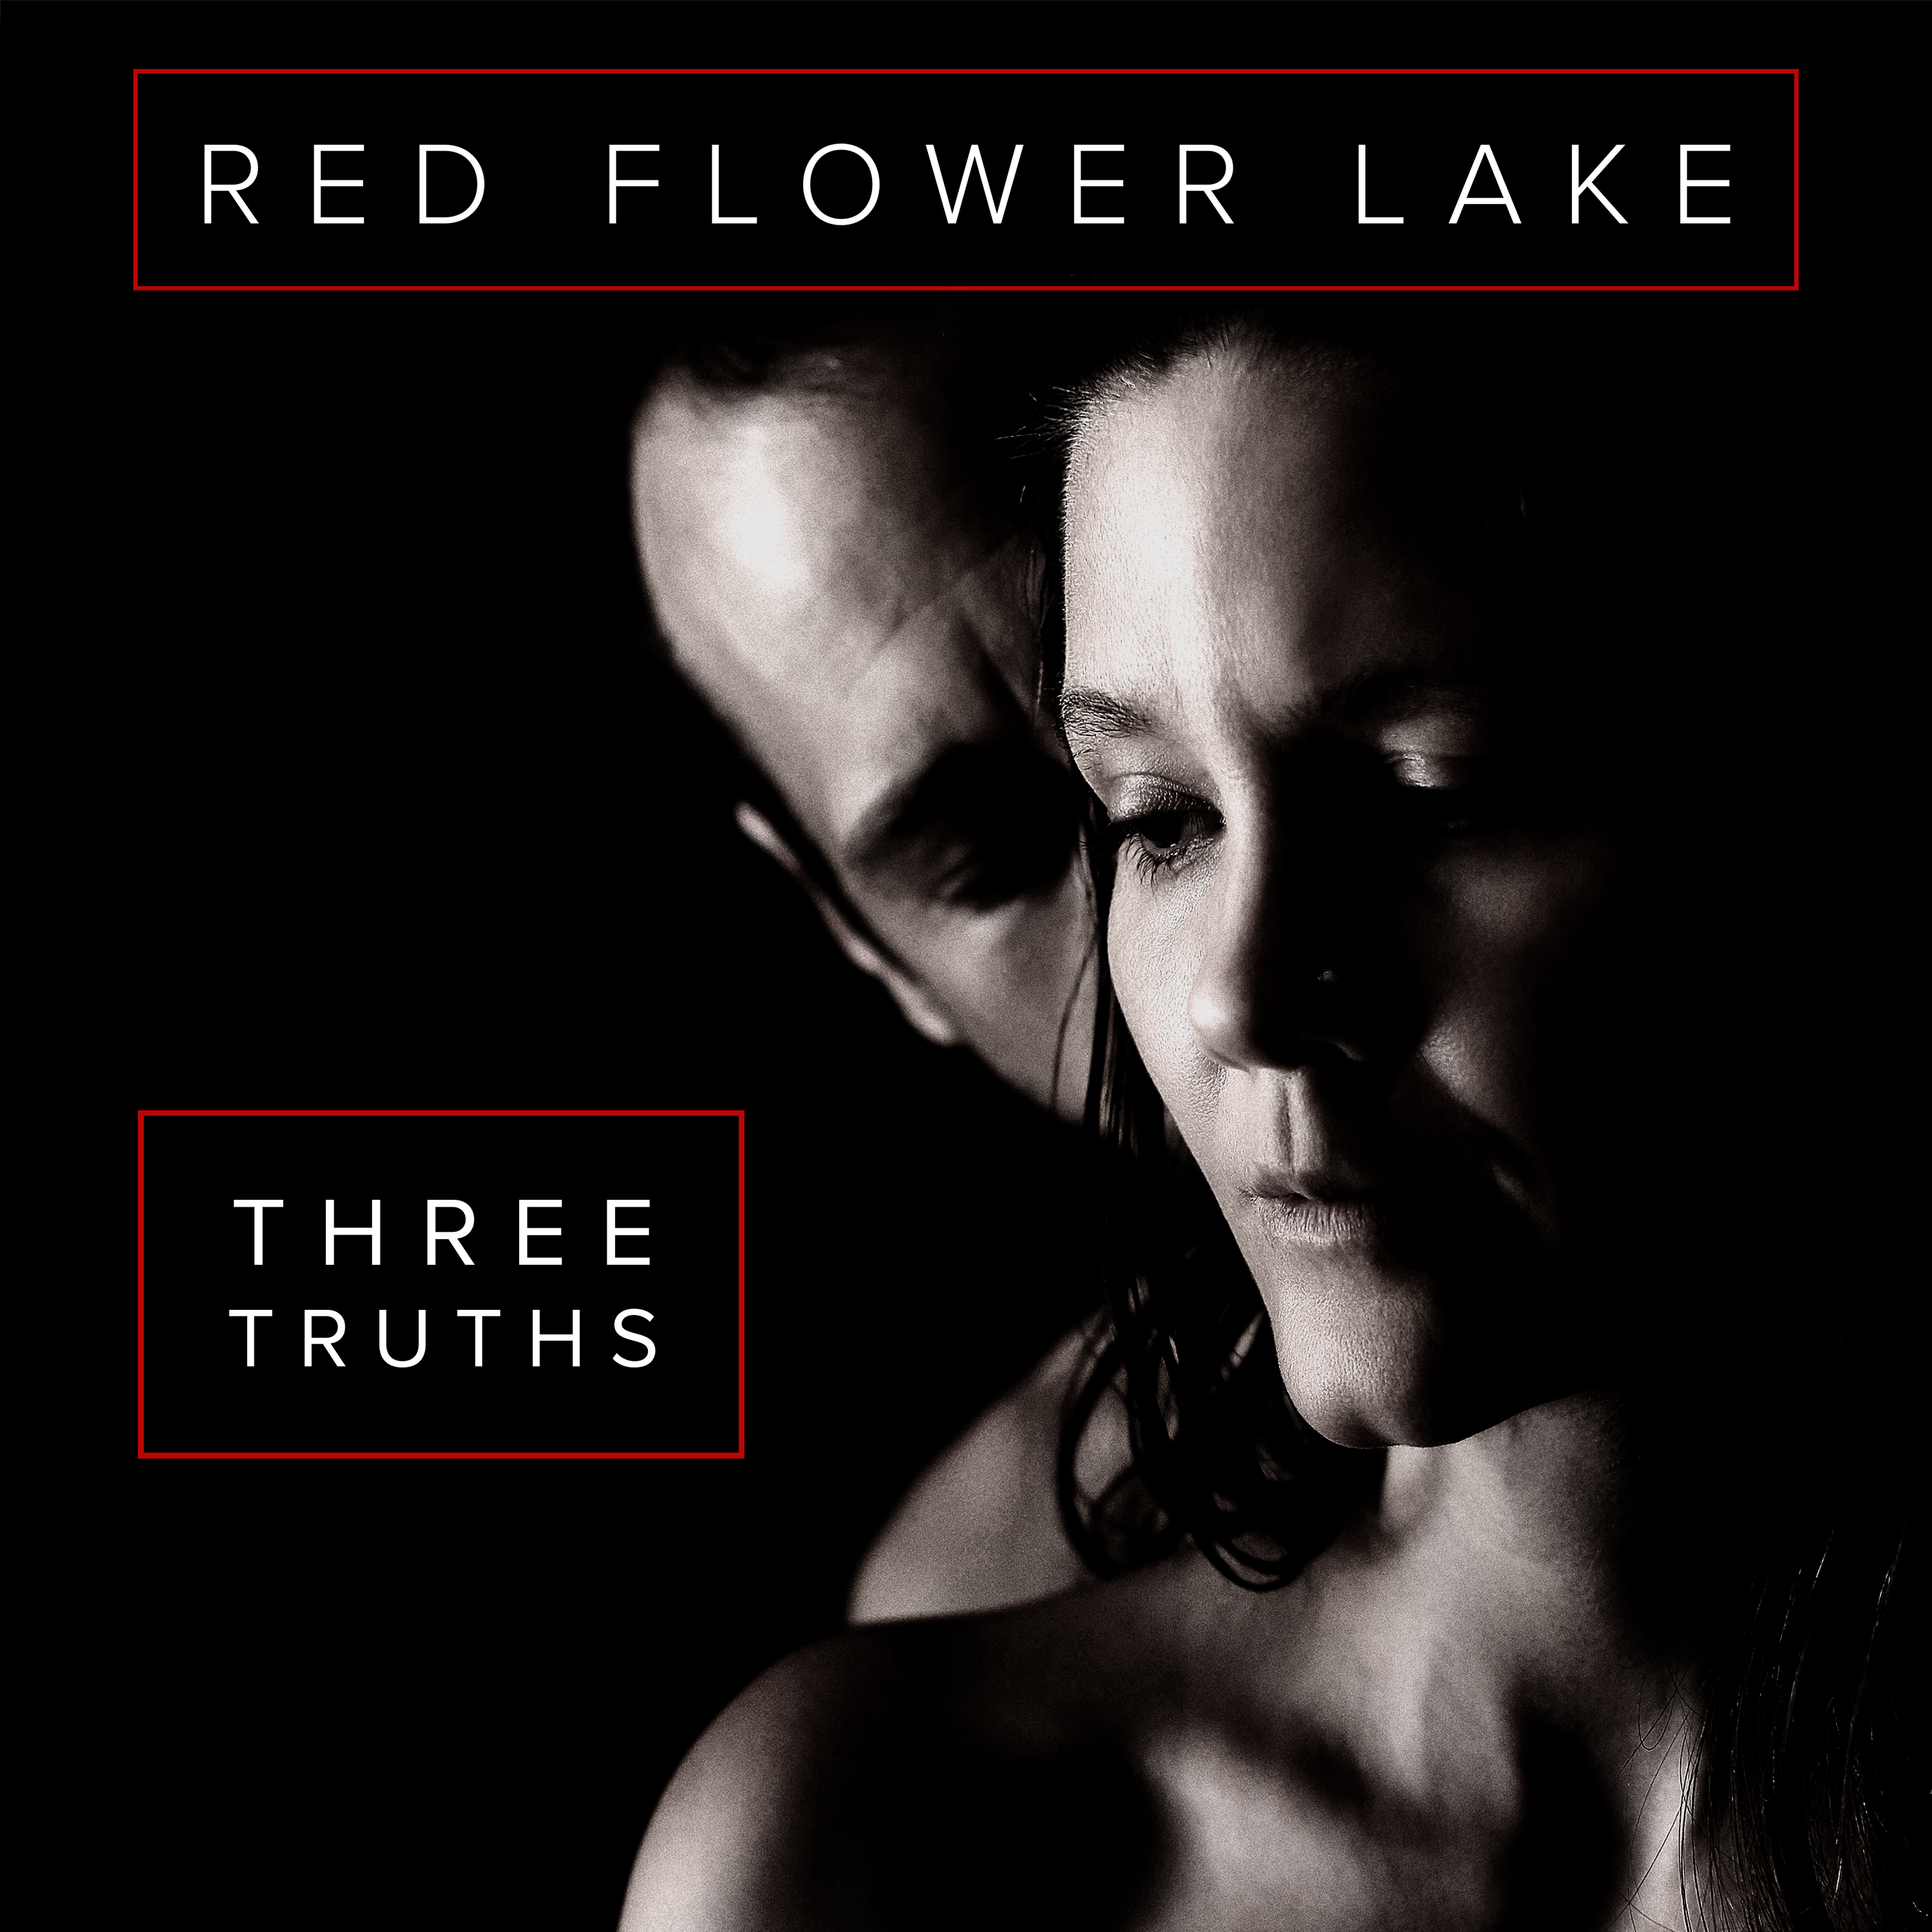 Red Flower Lake